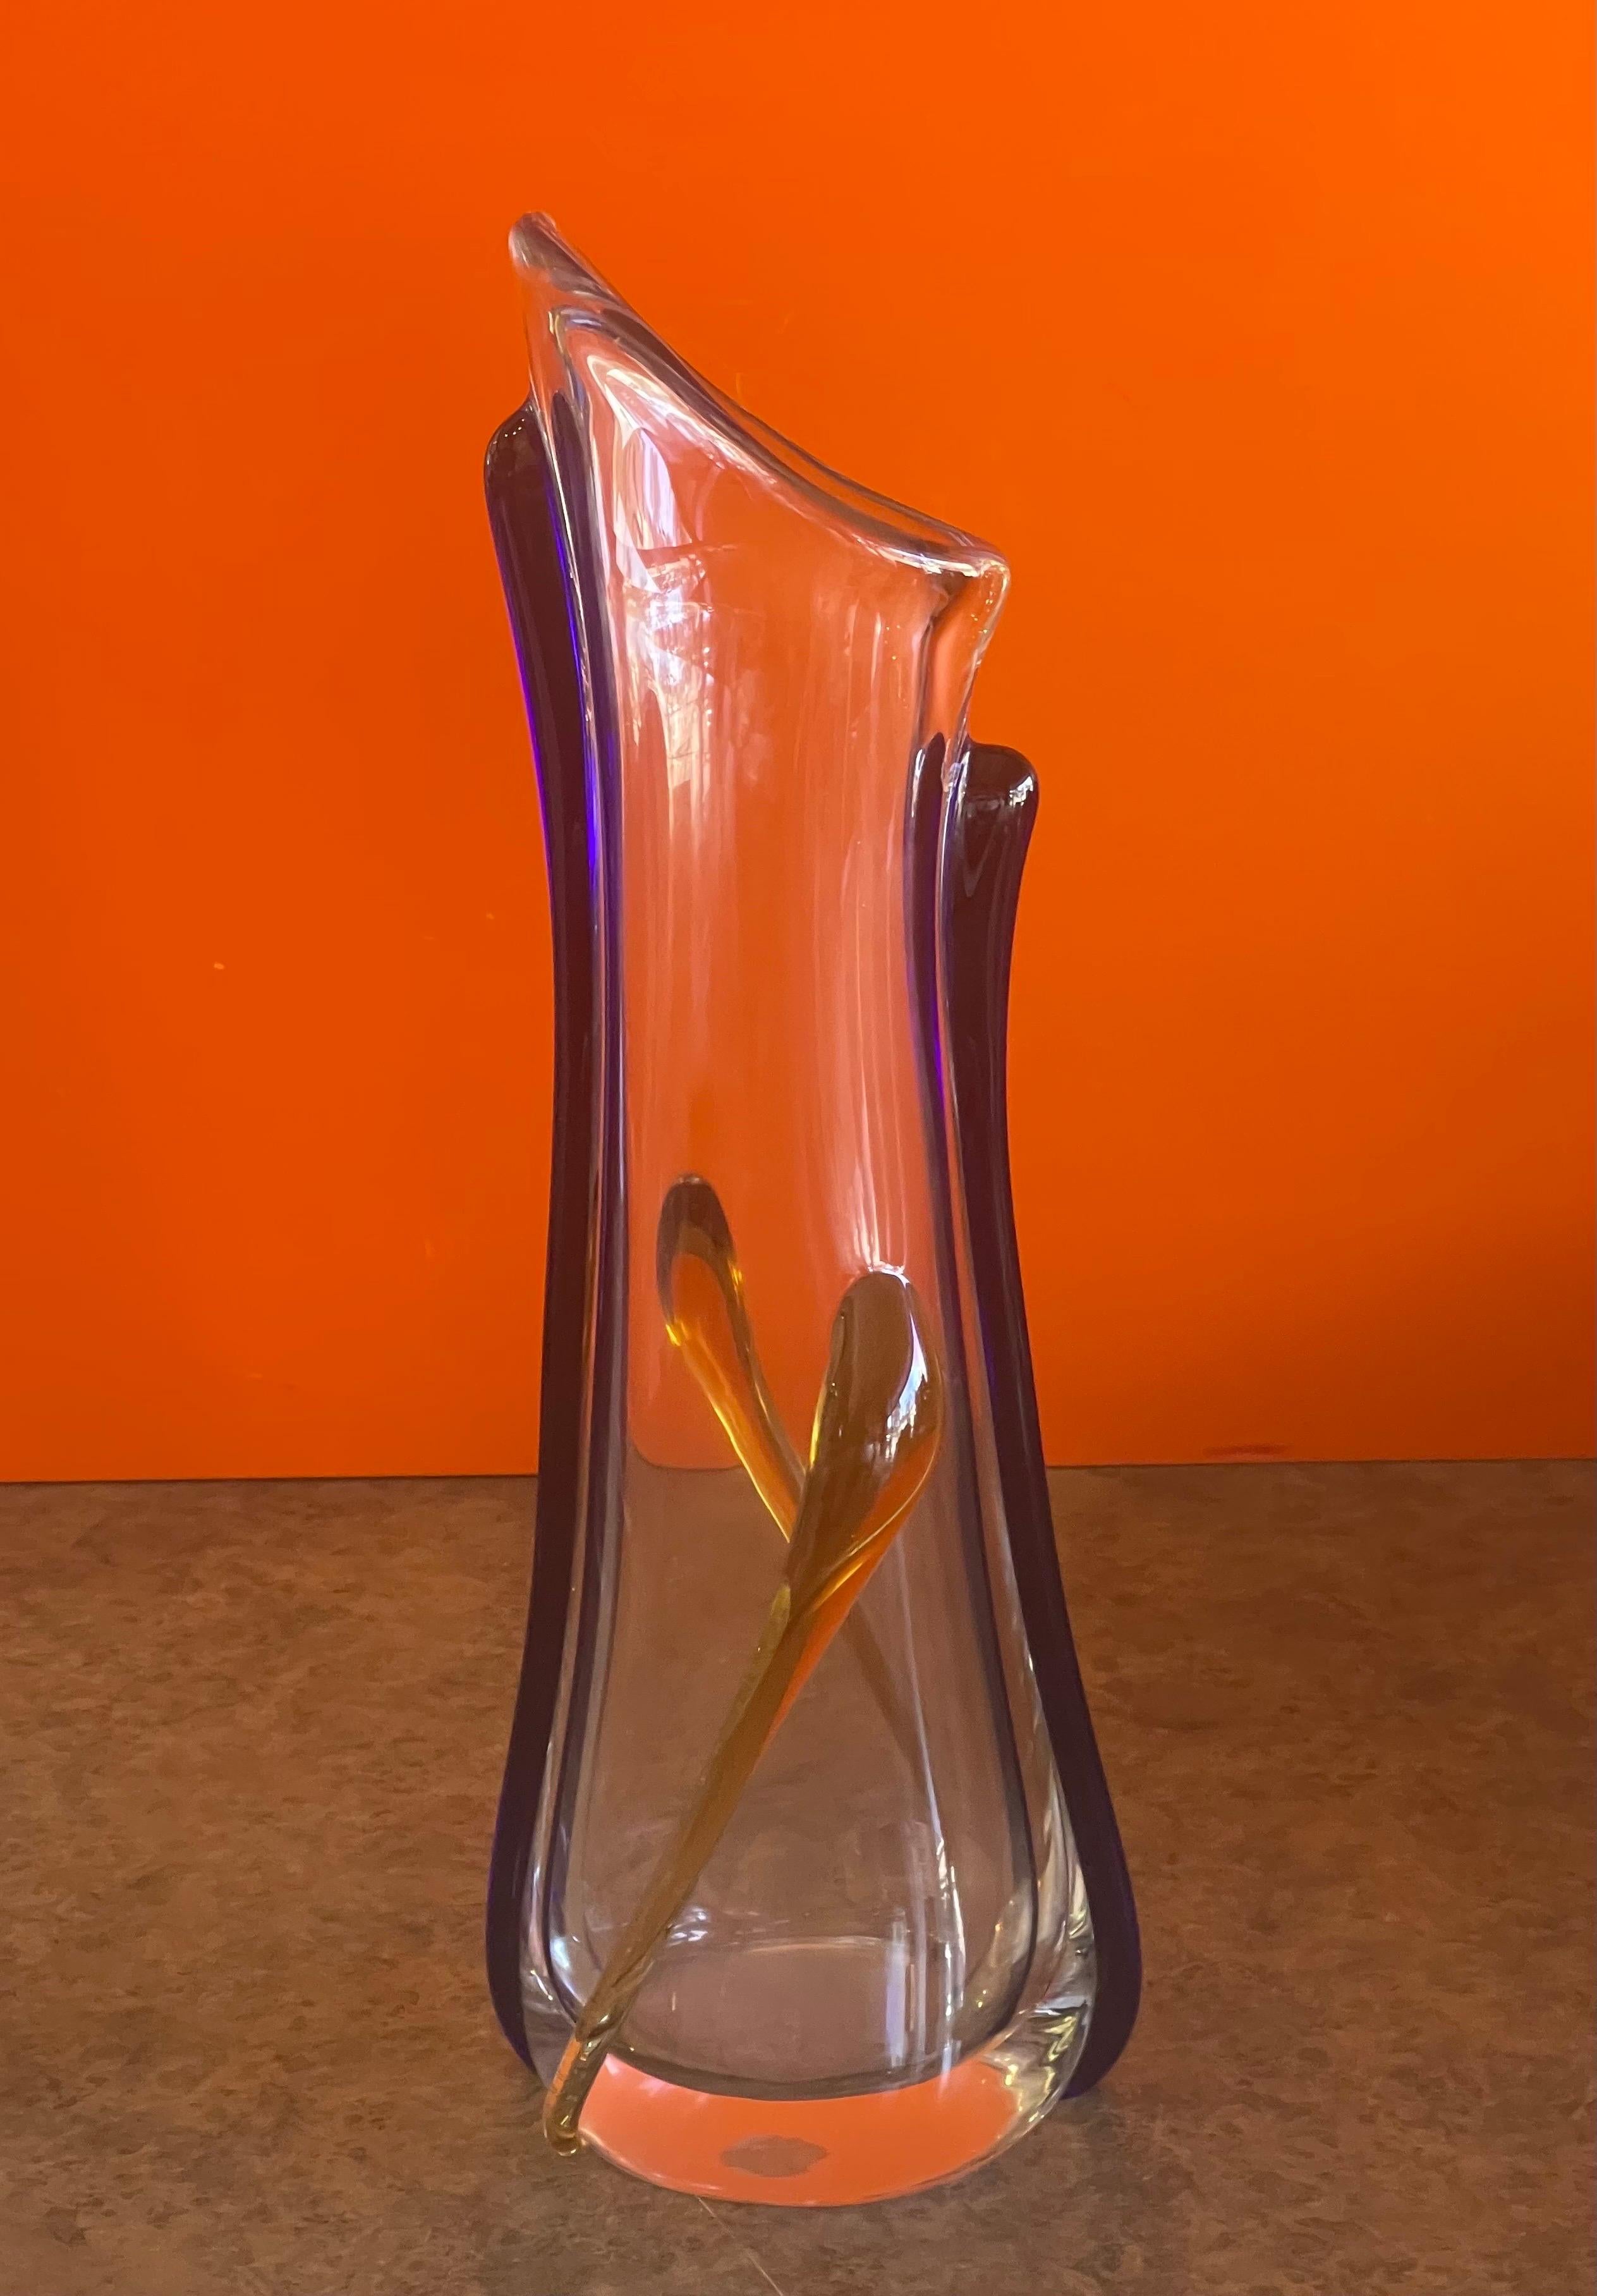 Große Vase aus Kunstglas von Murano, ca. 1990er Jahre. Es ist ein wunderschönes, sehr schweres, klares Stück mit komplizierter Überfangglasarbeit in Blau und Gelb. Die Vase ist in sehr gutem Vintage-Zustand ohne Chips oder Risse und misst 6,5 